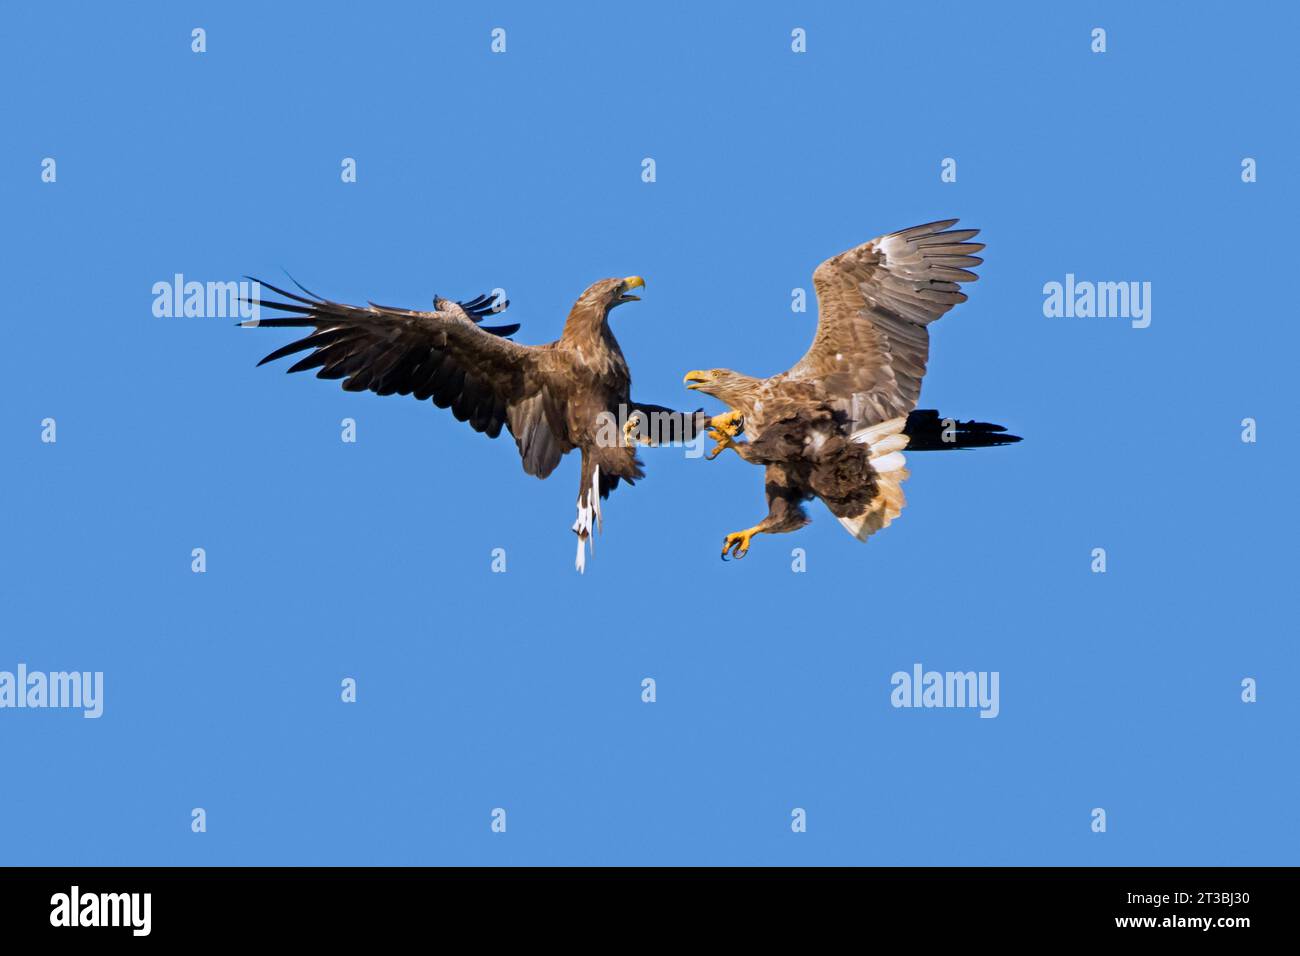 Zwei Erwachsene Seeadler / eurasische Seeadler / ernes (Haliaeetus albicilla) kämpfen im Flug in der Luft gegen den blauen Himmel im Sommer Stockfoto